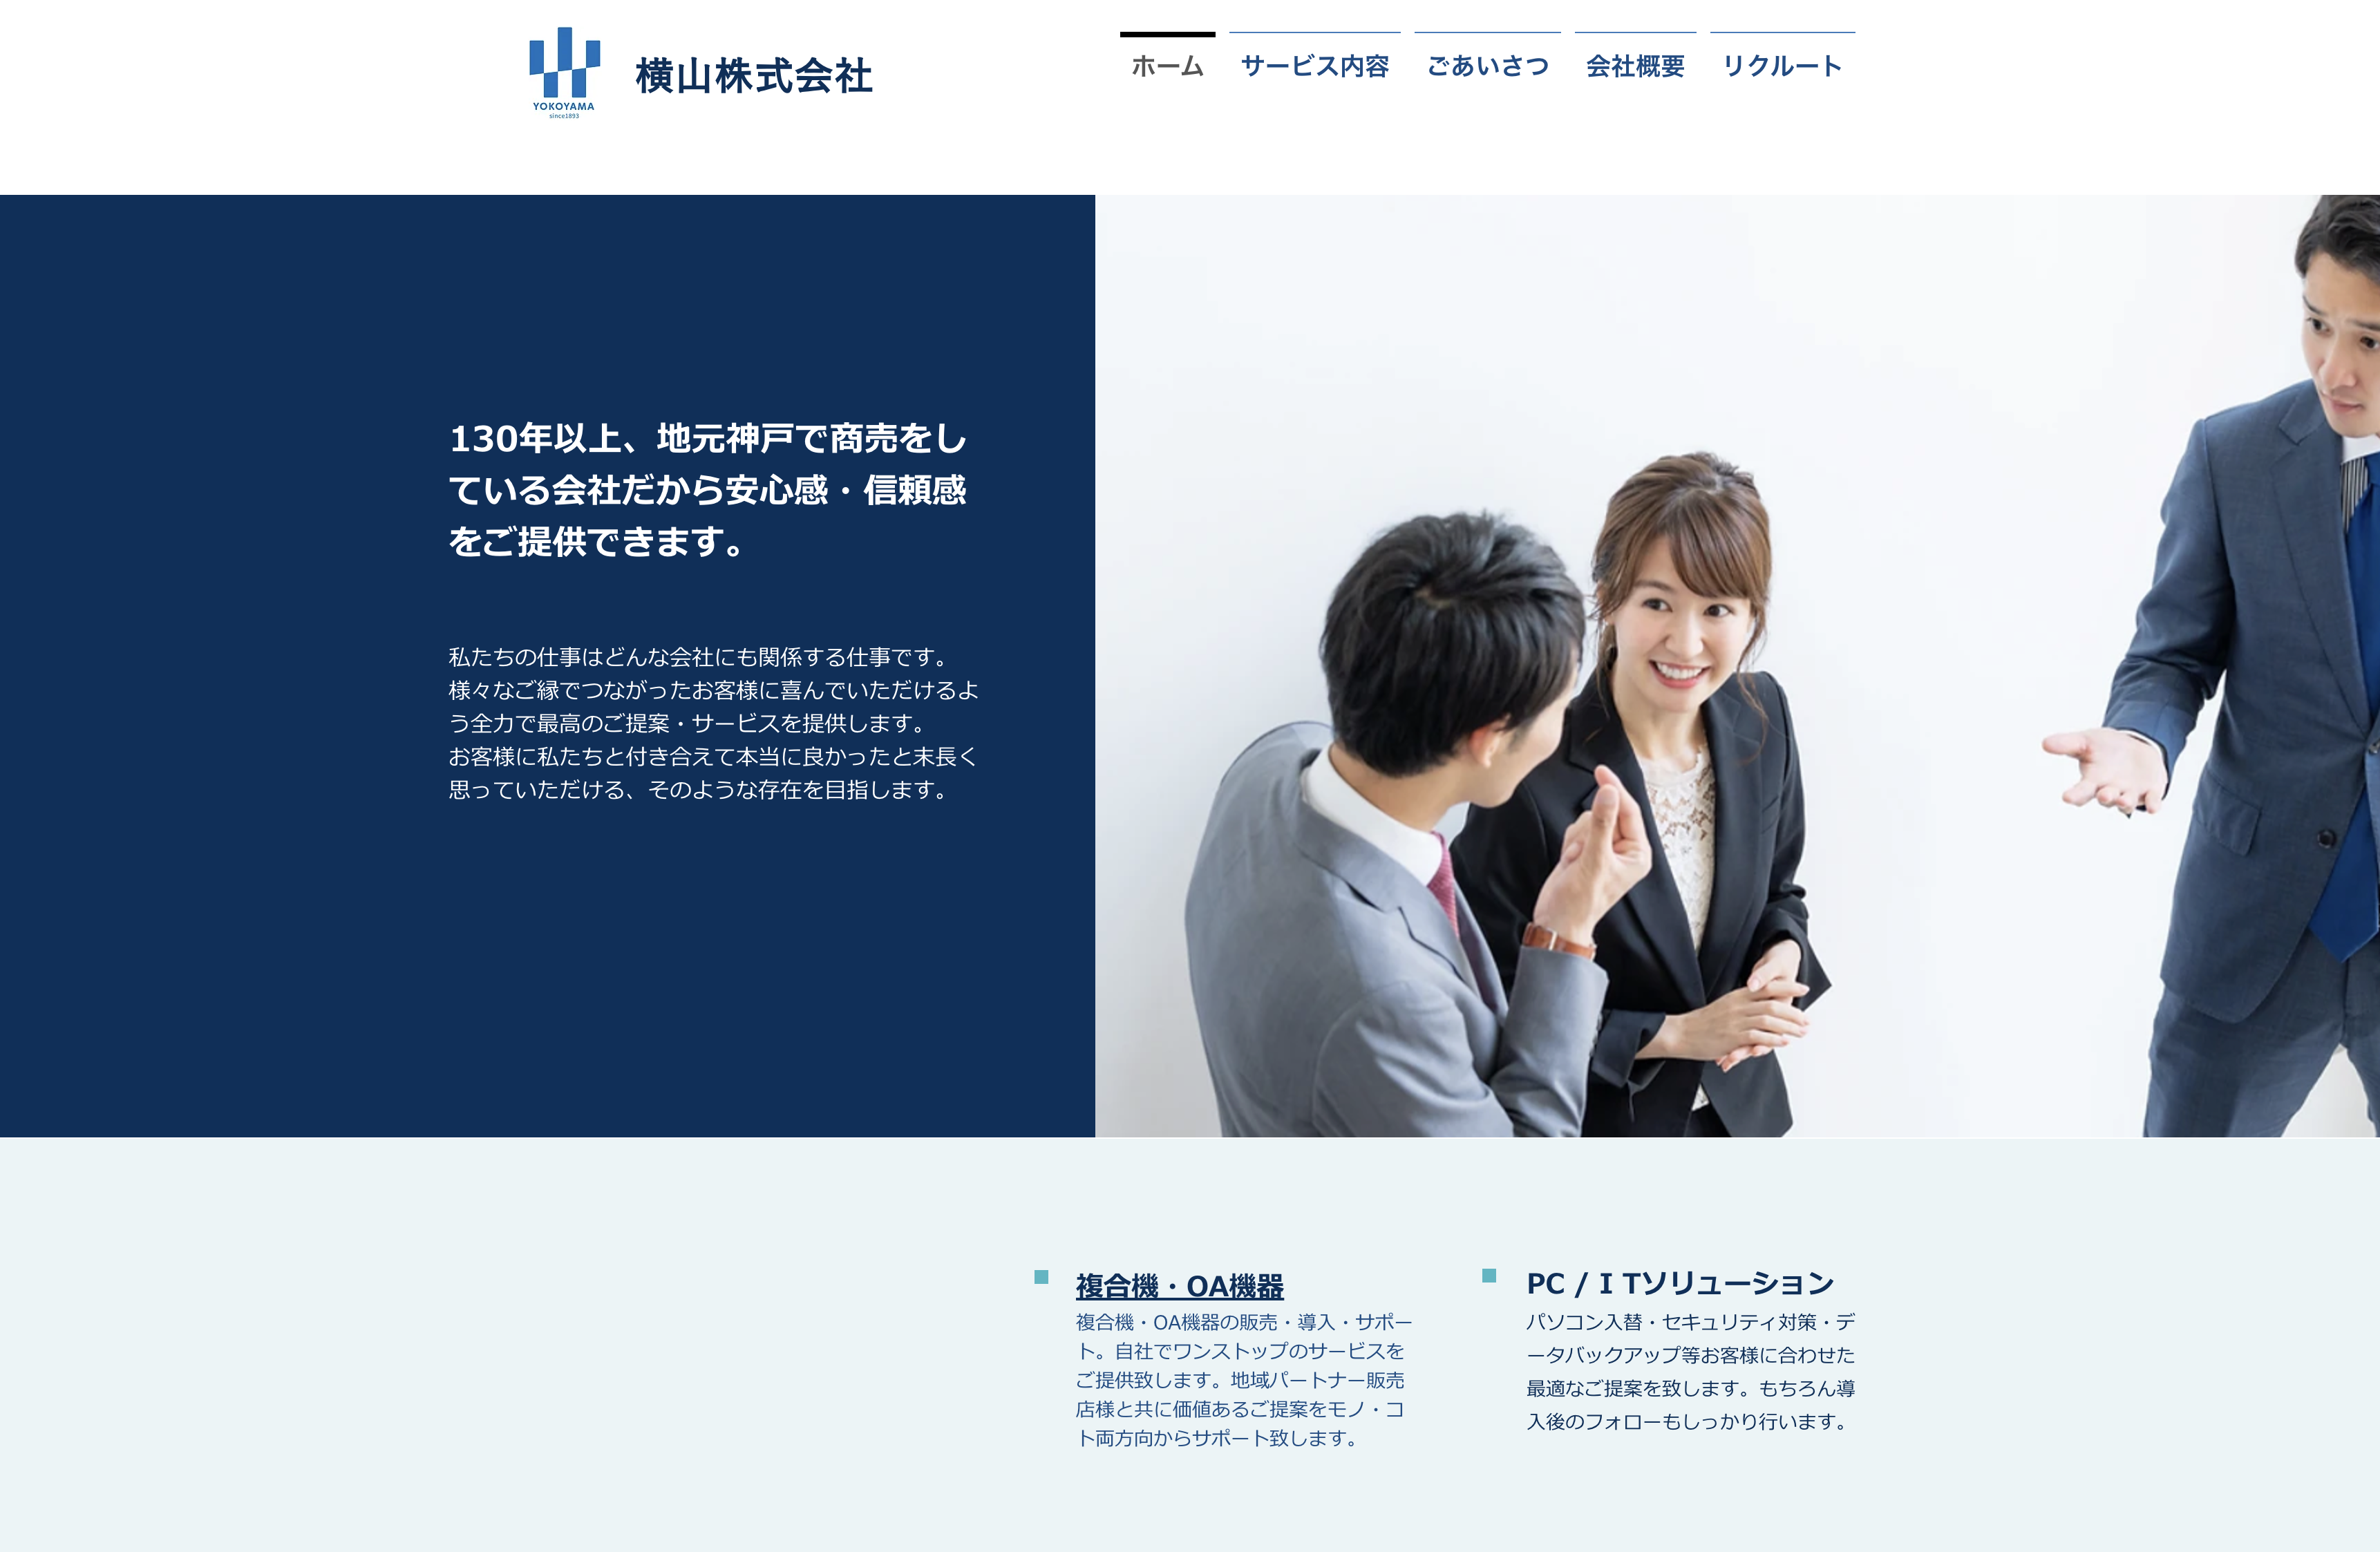 横山株式会社の横山株式会社:ネットワーク構築サービス